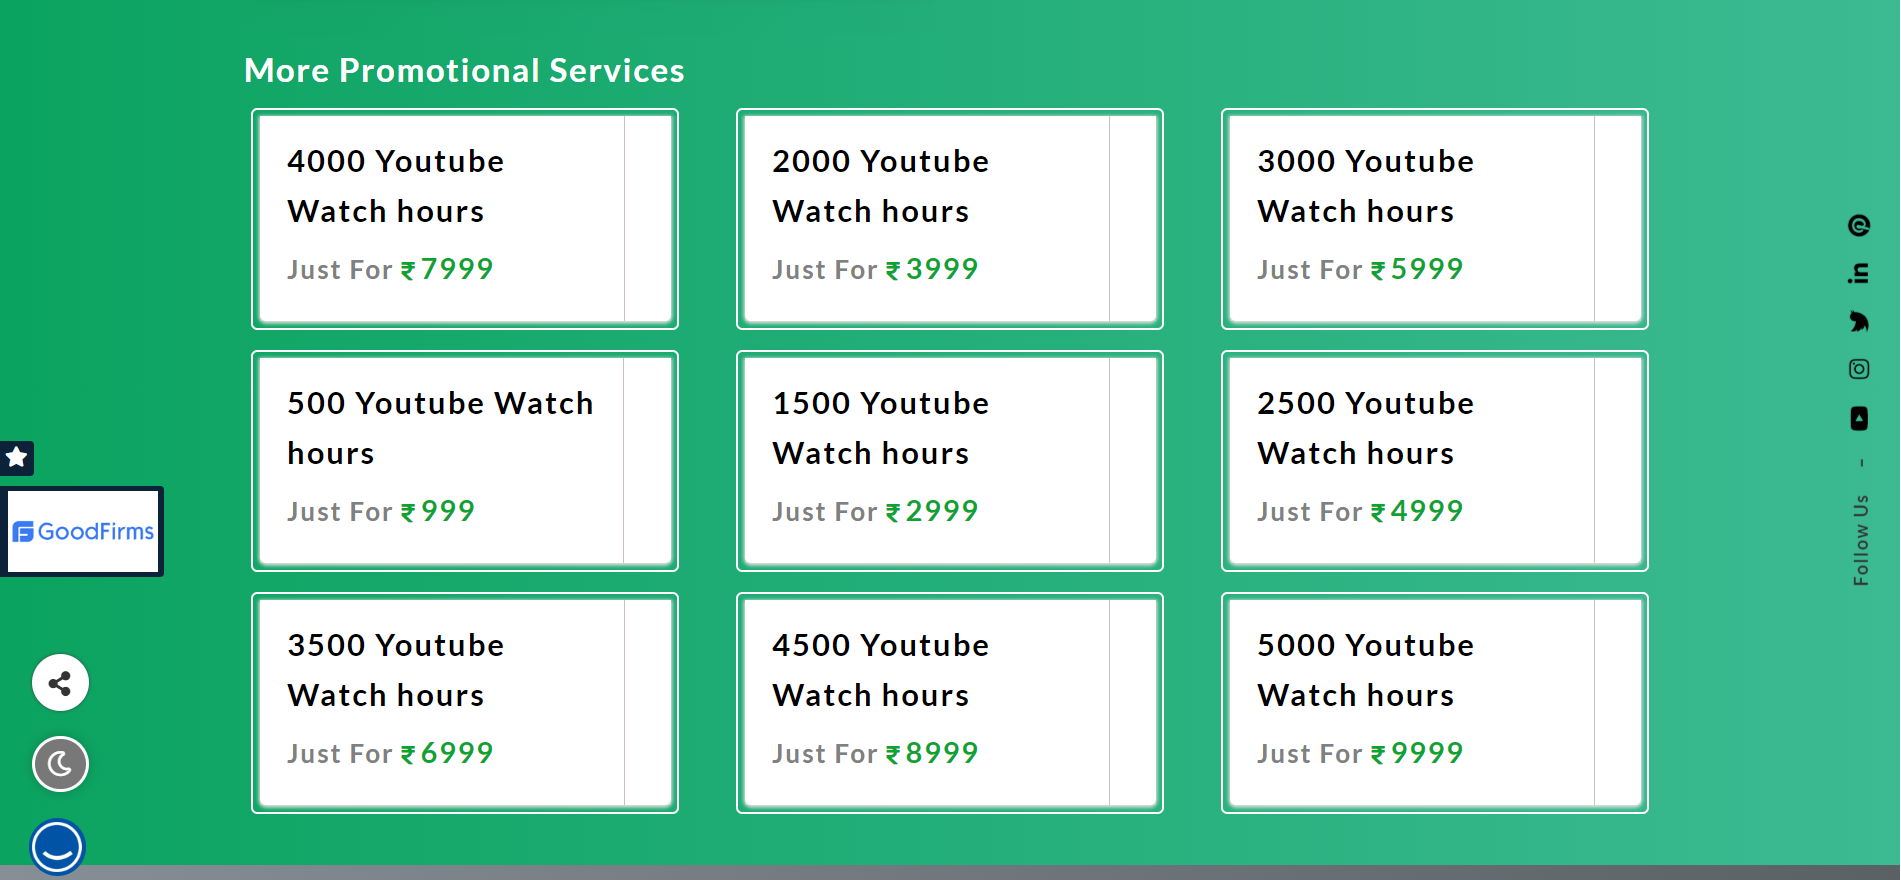 αγοράστε ώρες παρακολούθησης youtube